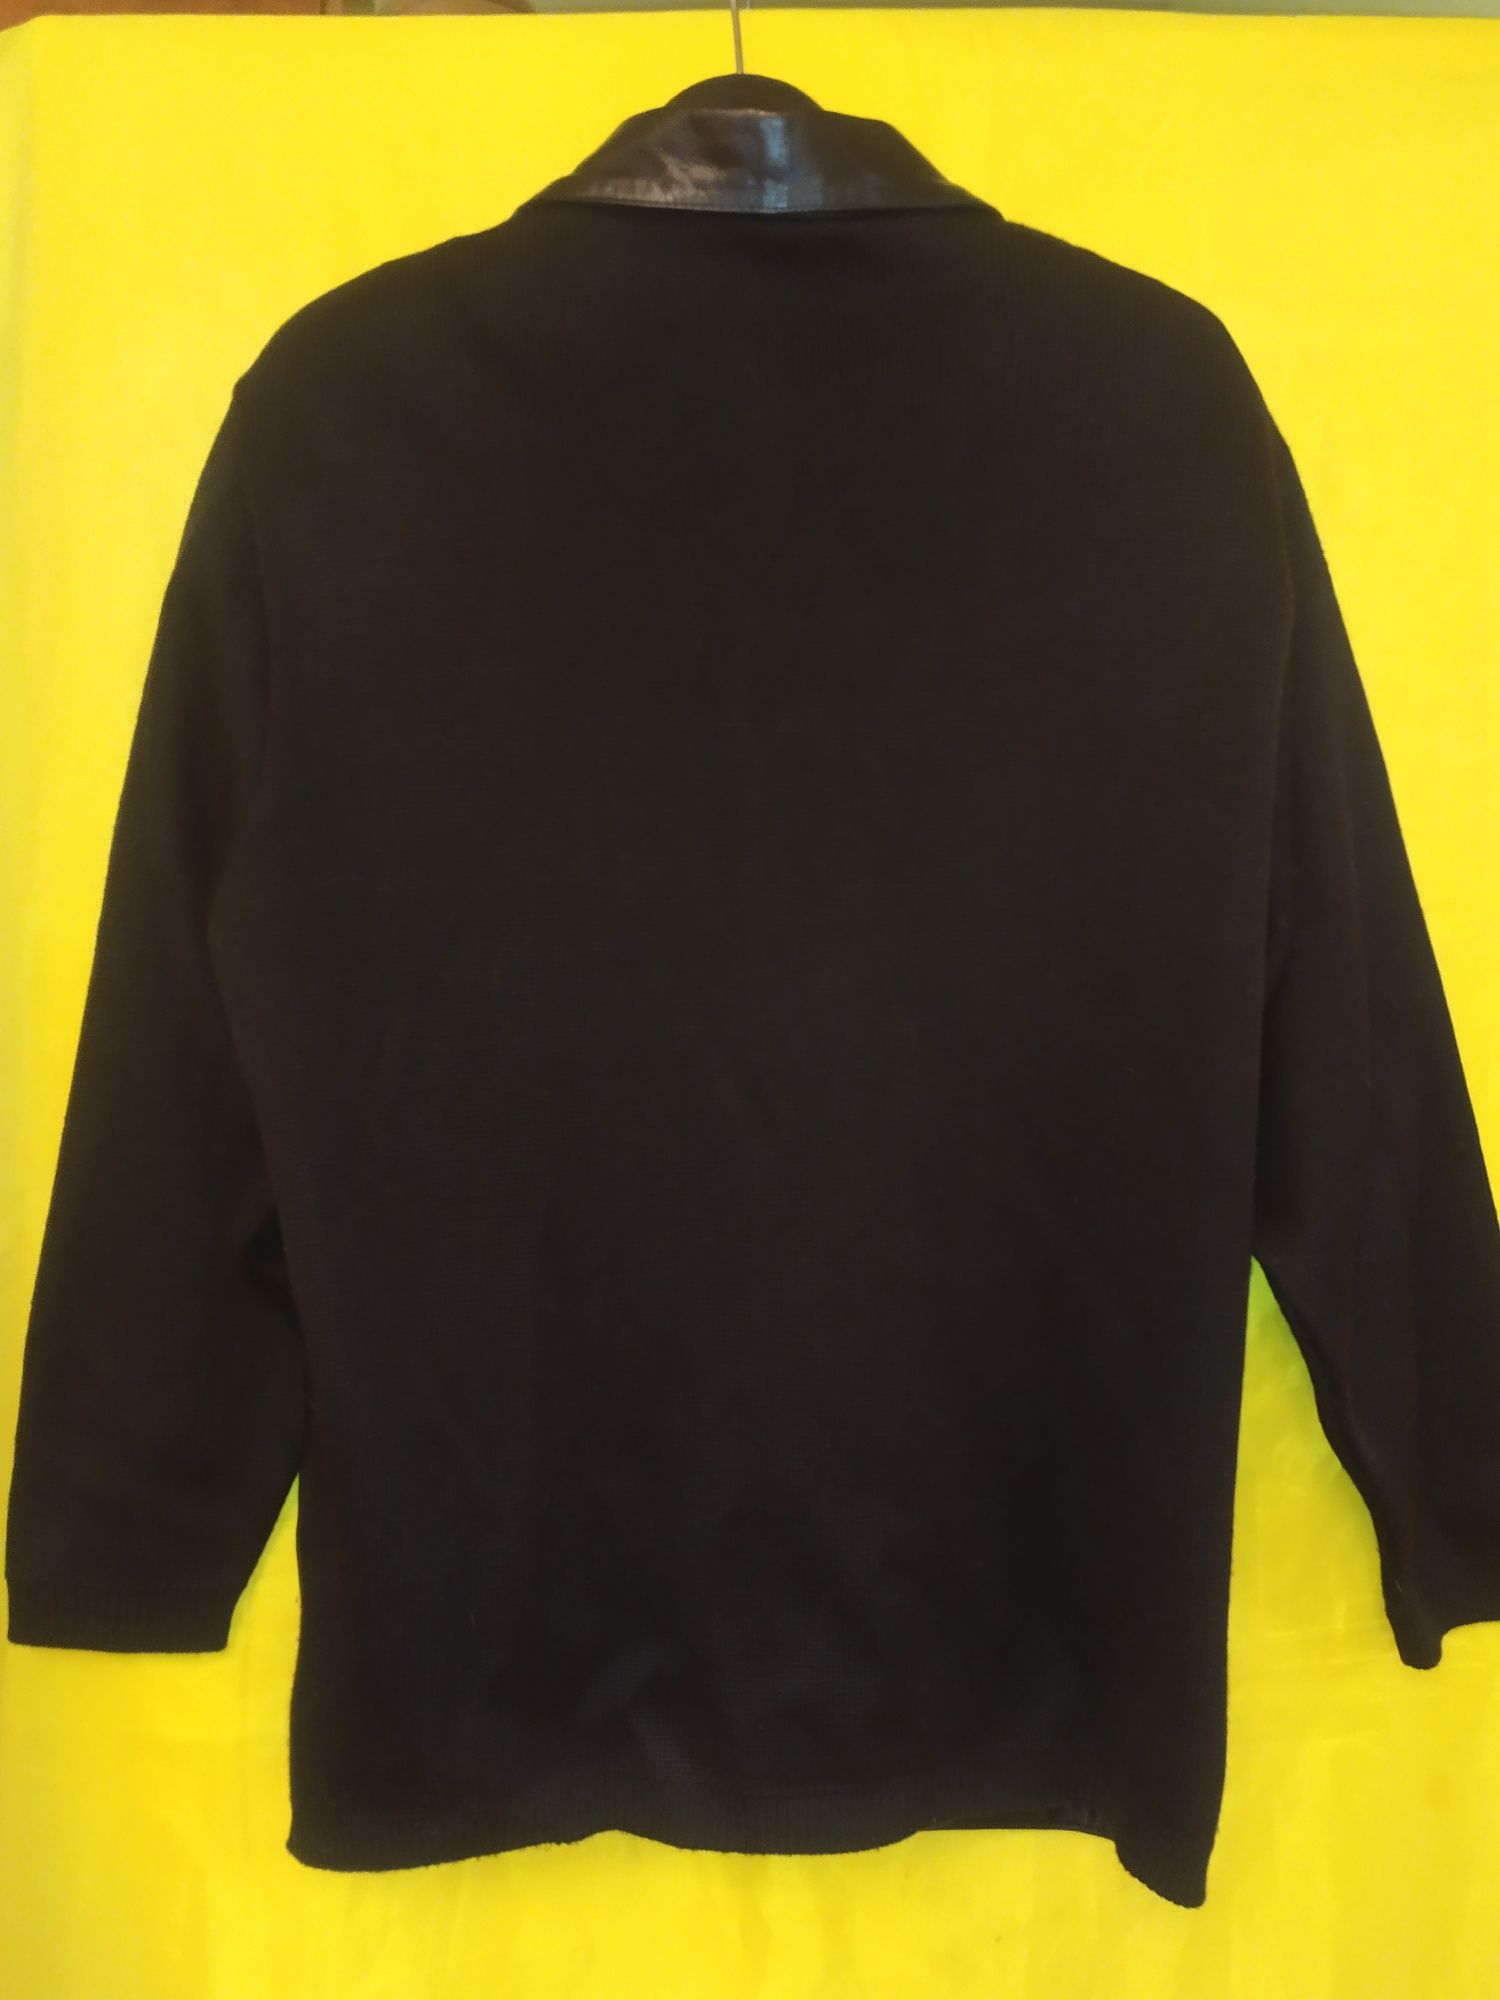 Мужская кофта, пиджак Walter Babini Италия, р. 50-52, куртка